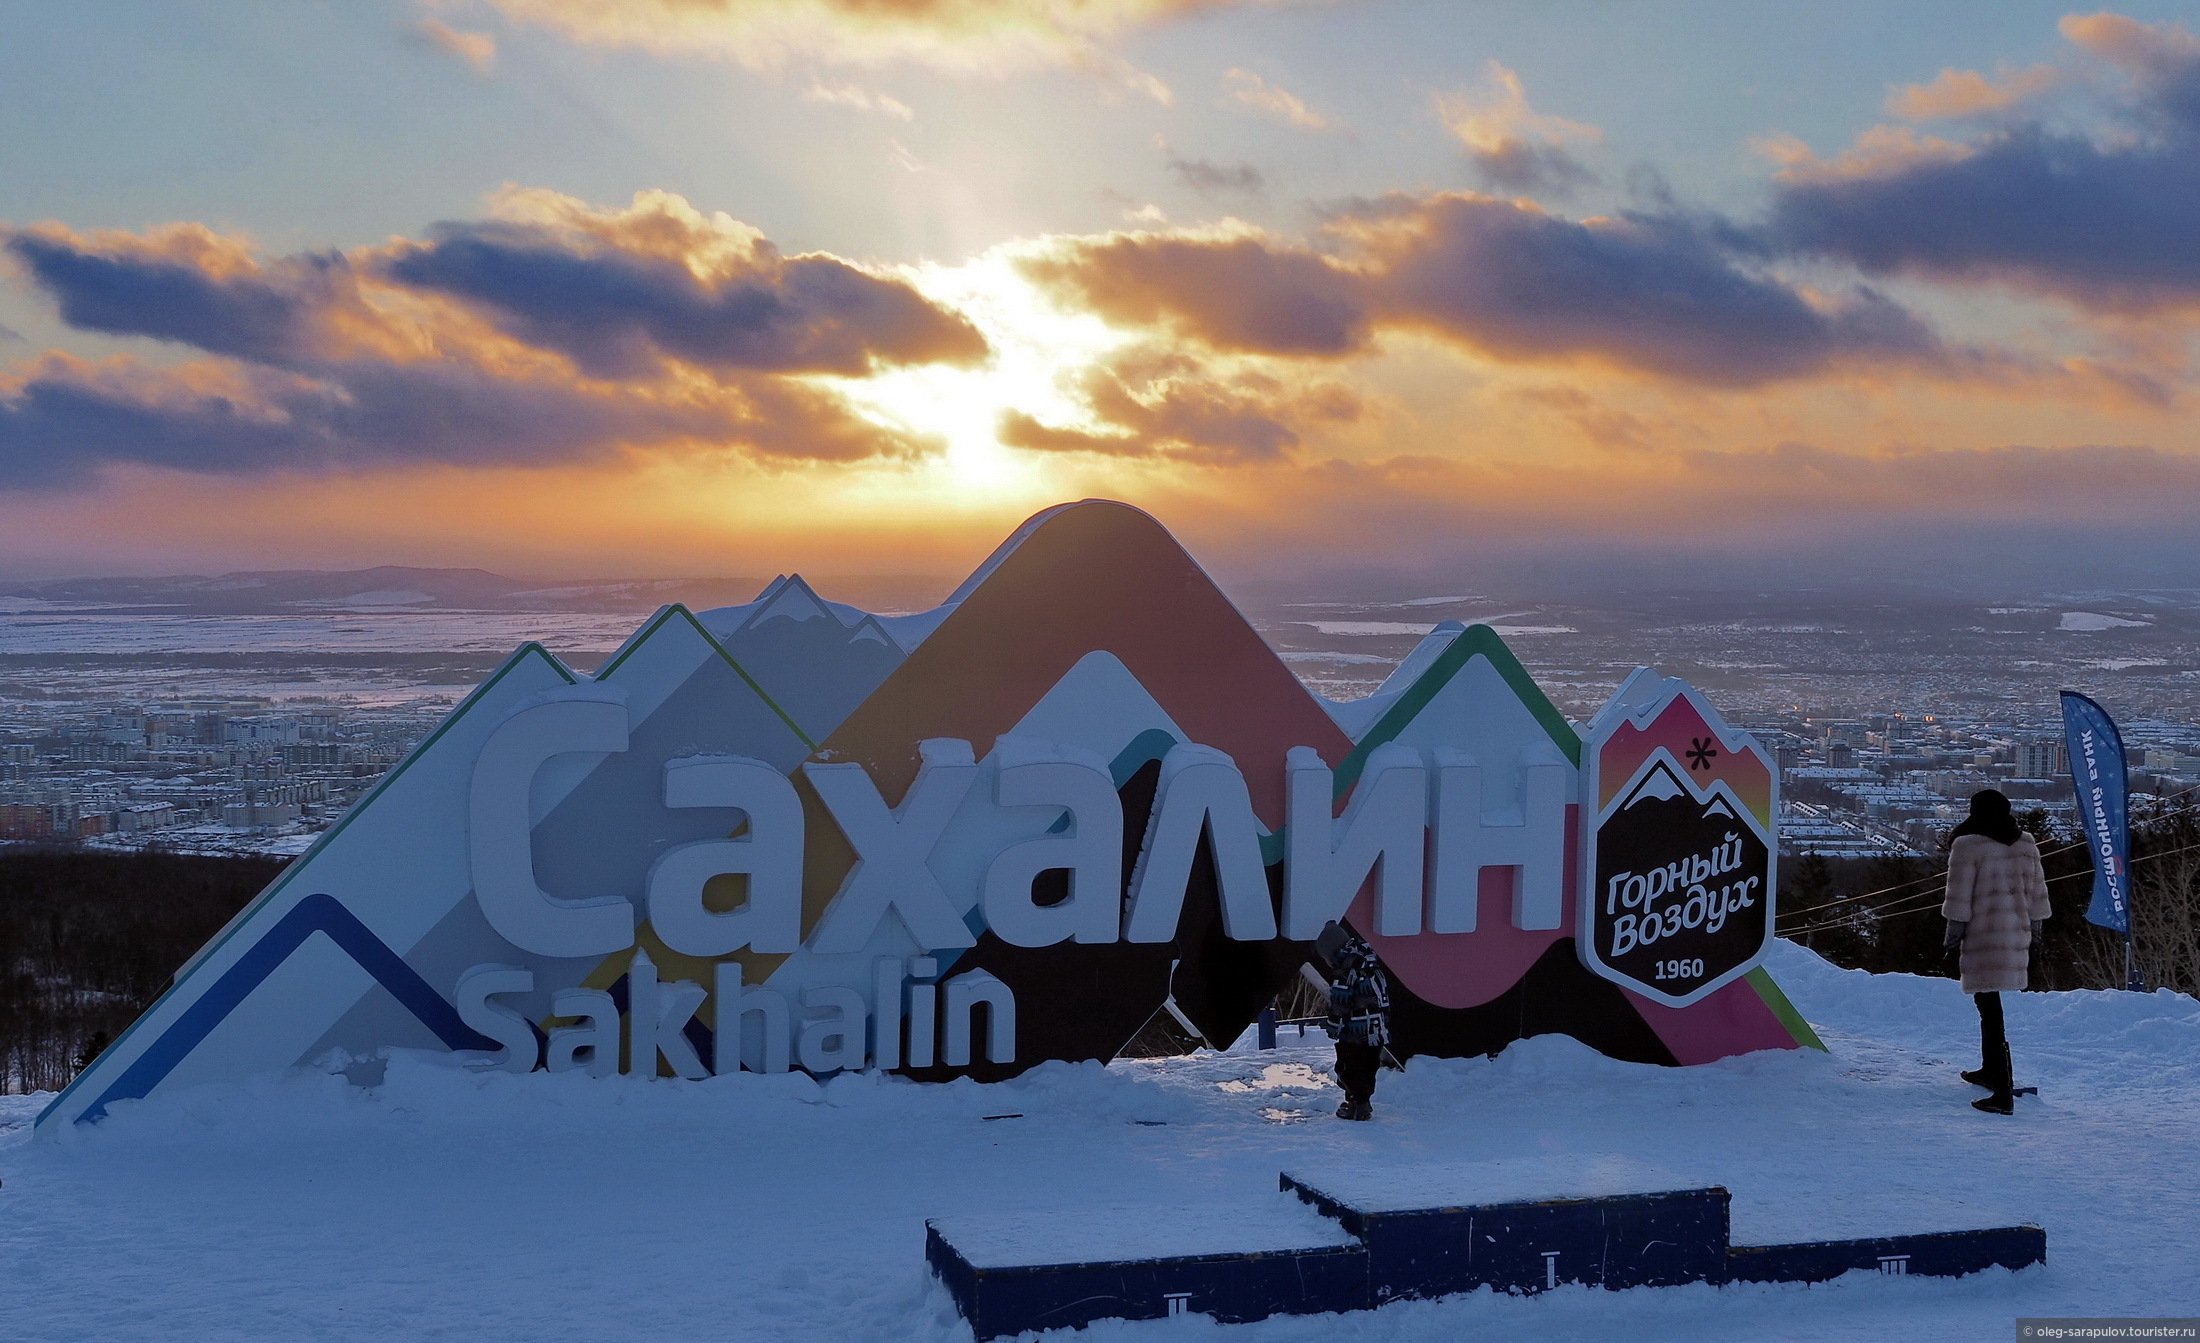 Горный воздух как добраться. Южно-Сахалинск горнолыжный курорт горный воздух. Сахалин зима горный воздух. ГЛК «горный воздух» в Южно-Сахалинске. Горнолыжные курорты Южно-Сахалинска.